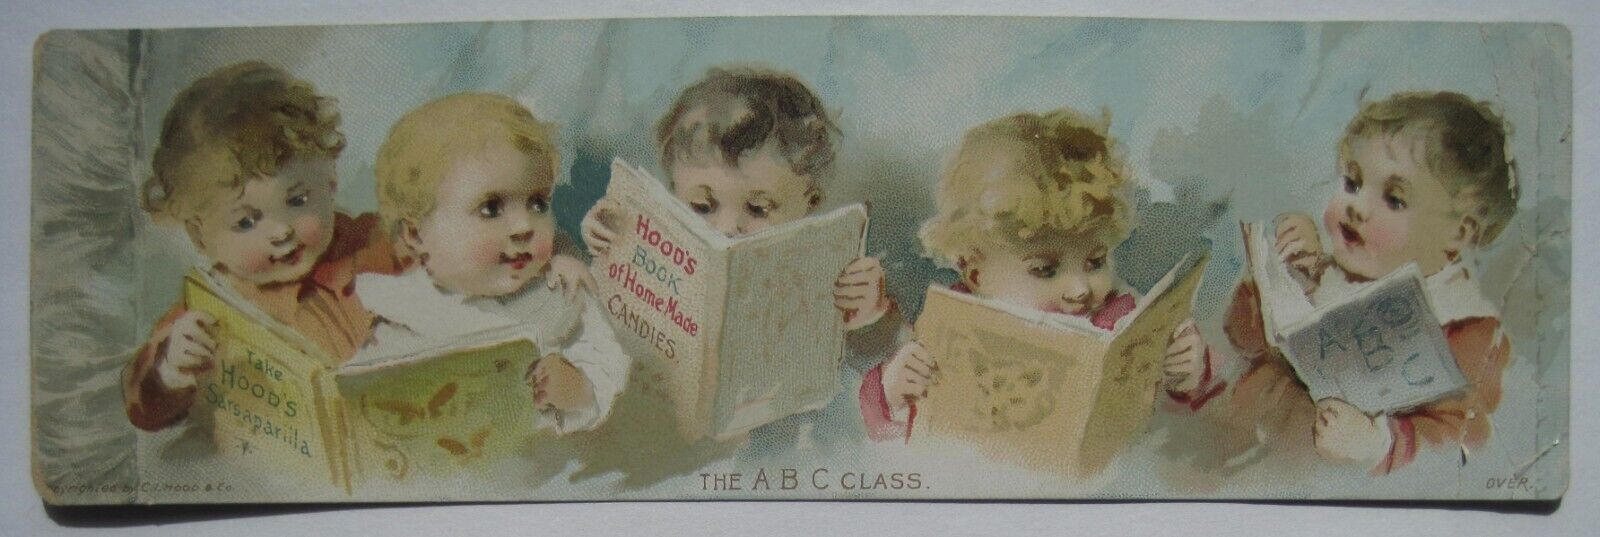 ABC Class Children Hood\'s Sarsaparilla Old Advertising Trade Card Quack Medicine